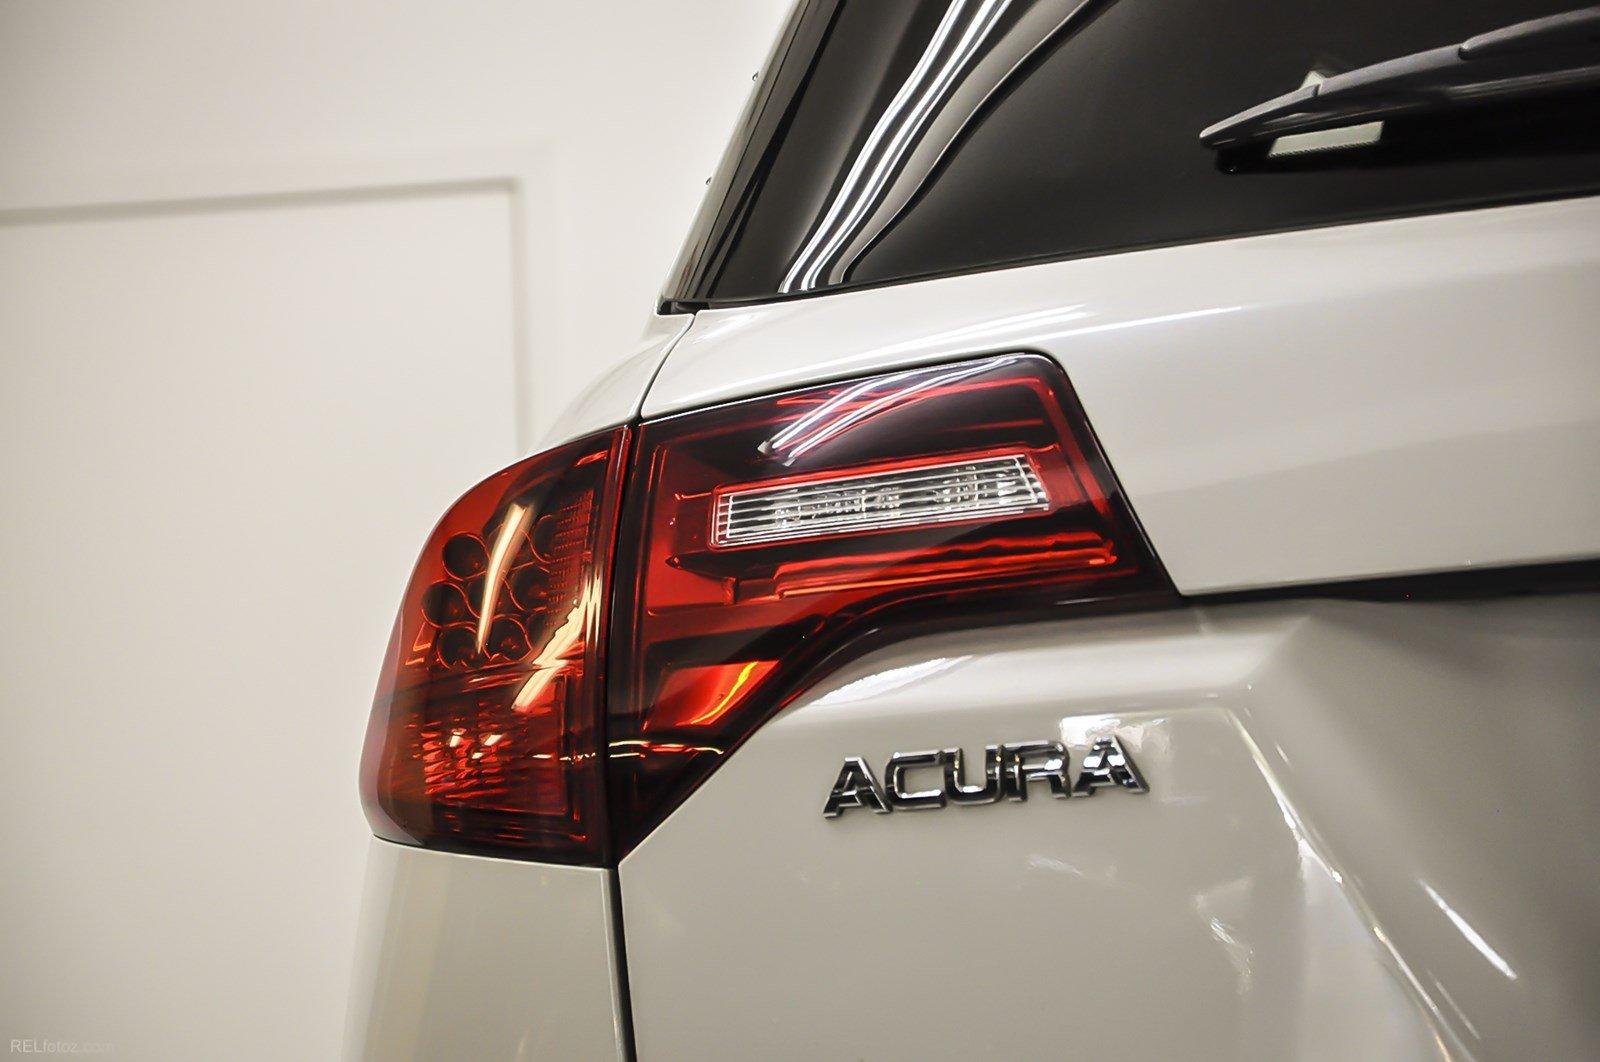 Used 2011 Acura MDX Advance Pkg for sale Sold at Gravity Autos Marietta in Marietta GA 30060 6